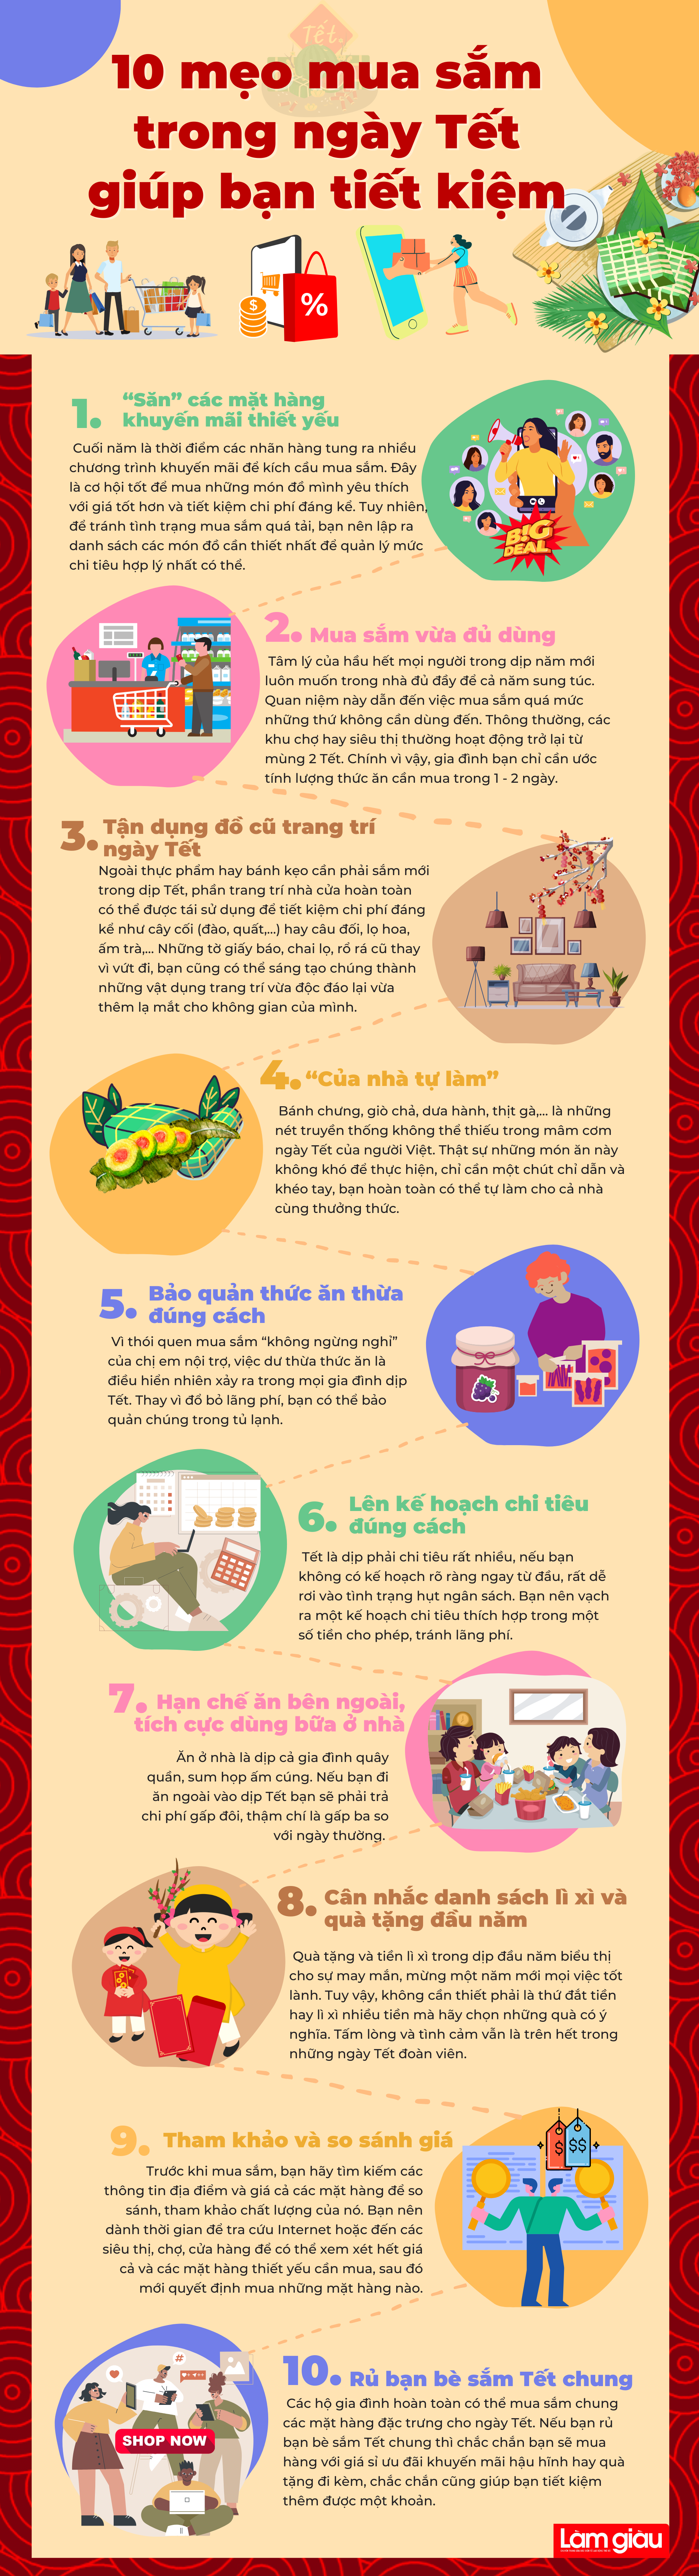 [Infographic]: 10 mẹo mua sắm trong ngày Tết giúp bạn tiết kiệm